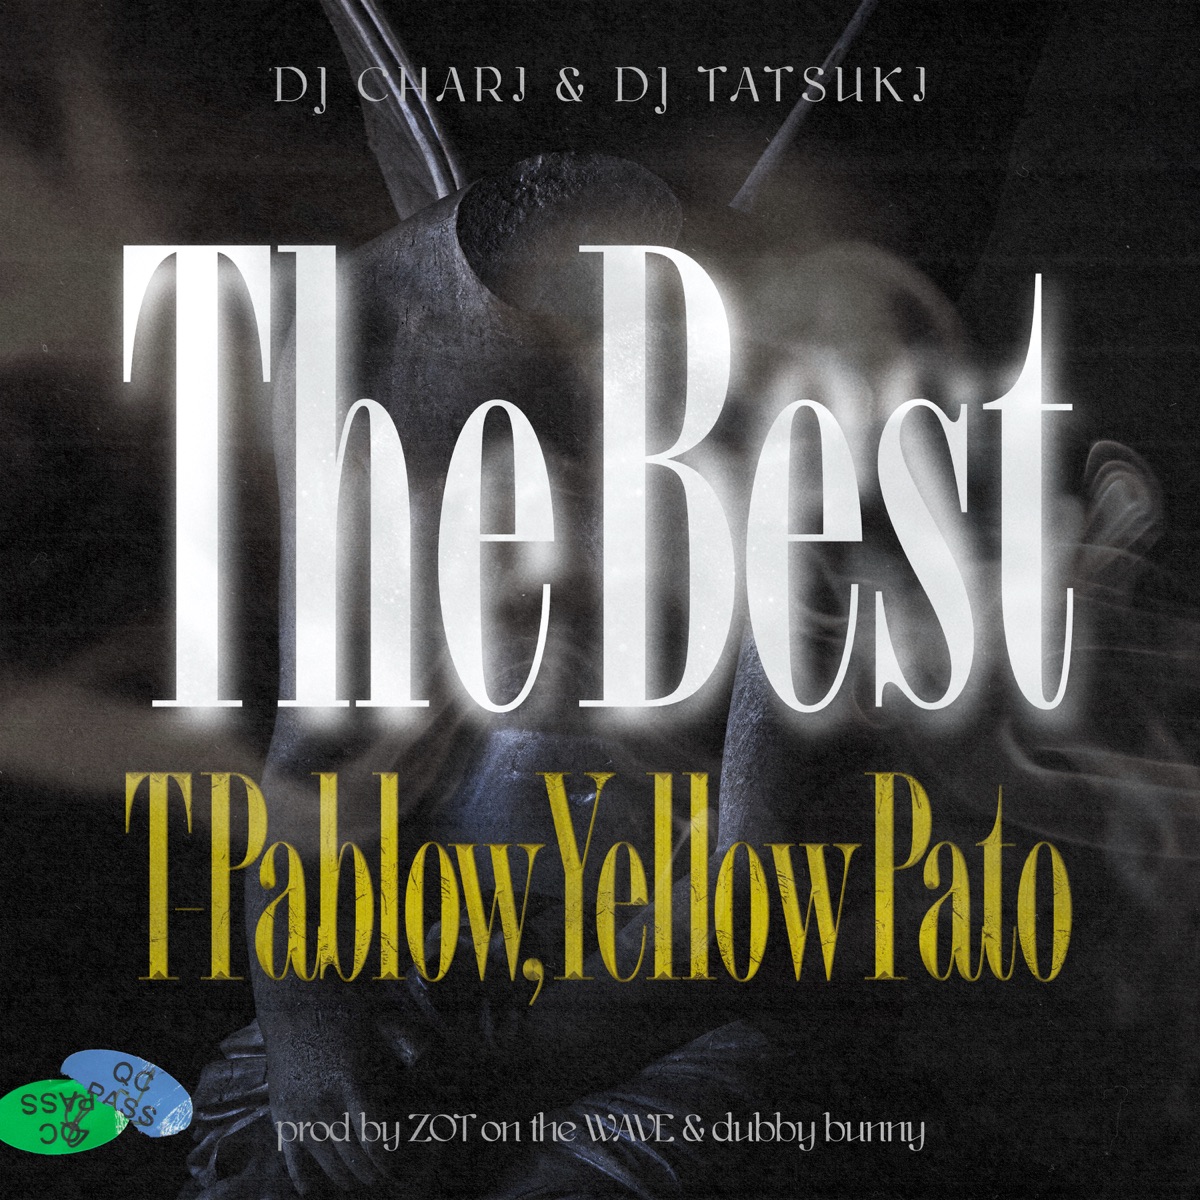 『DJ CHARI & DJ TATSUKI - The Best (feat. T-Pablow & Yellow Pato)』収録の『The Best (feat. T-Pablow & Yellow Pato)』ジャケット